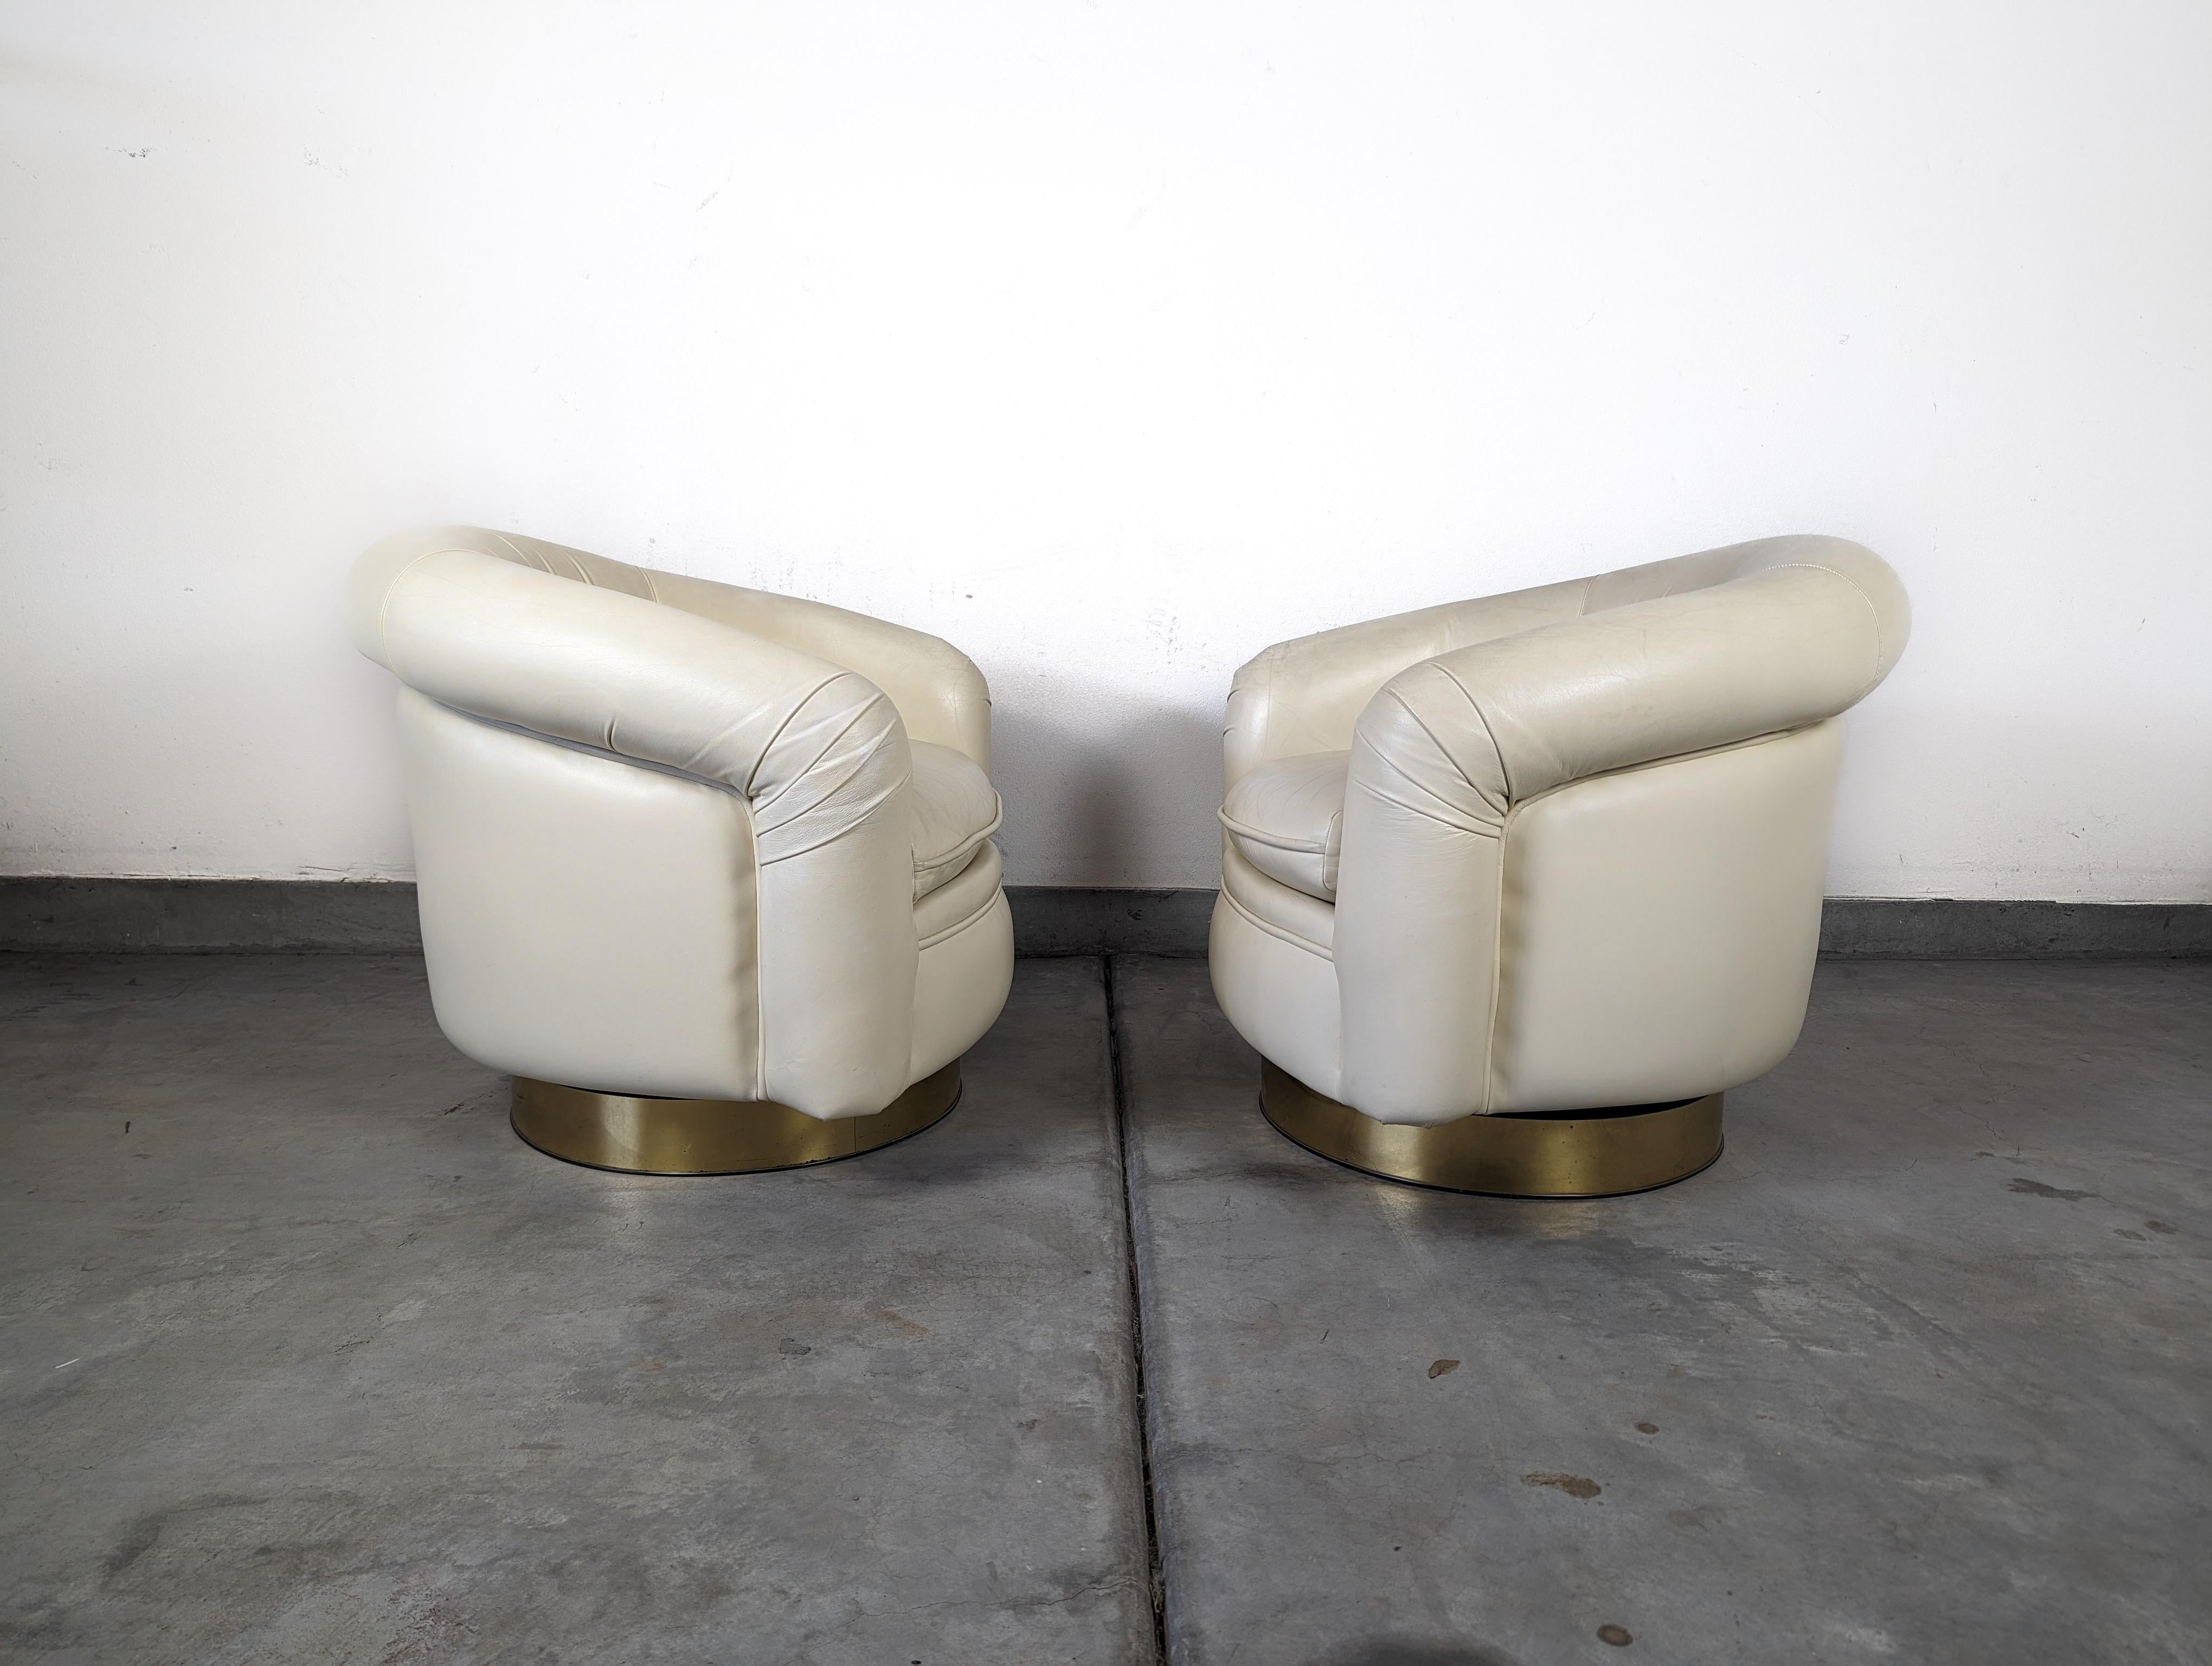 Wir freuen uns, Ihnen dieses atemberaubende Paar Vintage-Loungesessel präsentieren zu können, die von dem berühmten Milo Baughman für Thayer Coggin entworfen wurden. Diese Stühle aus den 1970er Jahren sind eine Hommage an das ikonische Design des